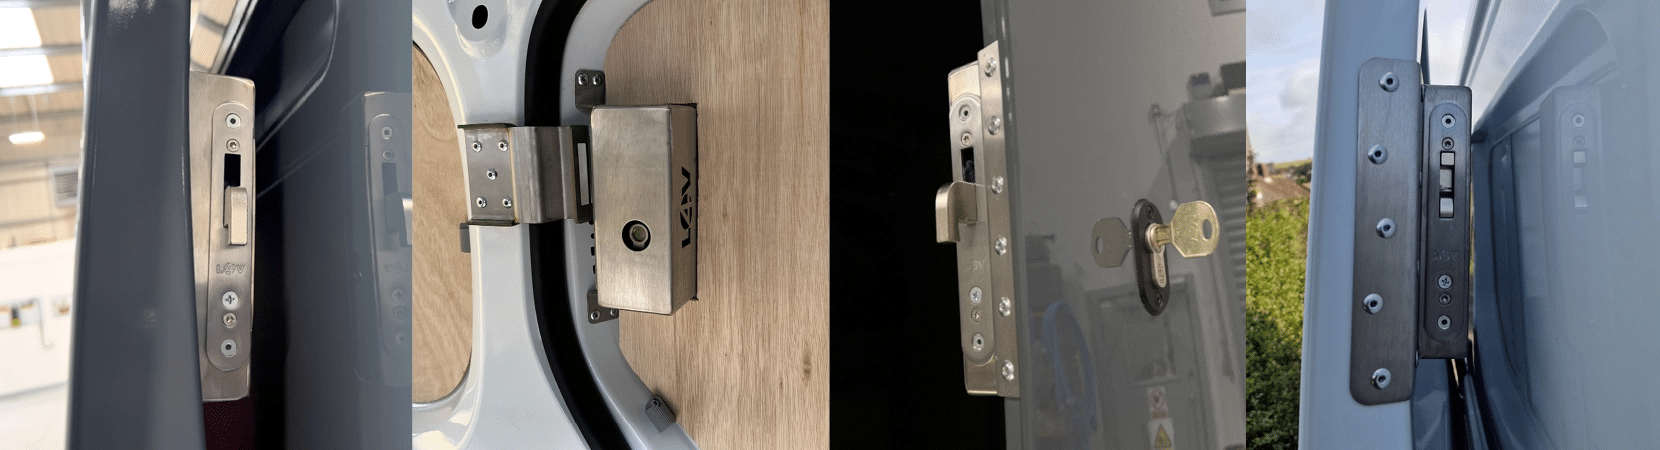 Van security locks 